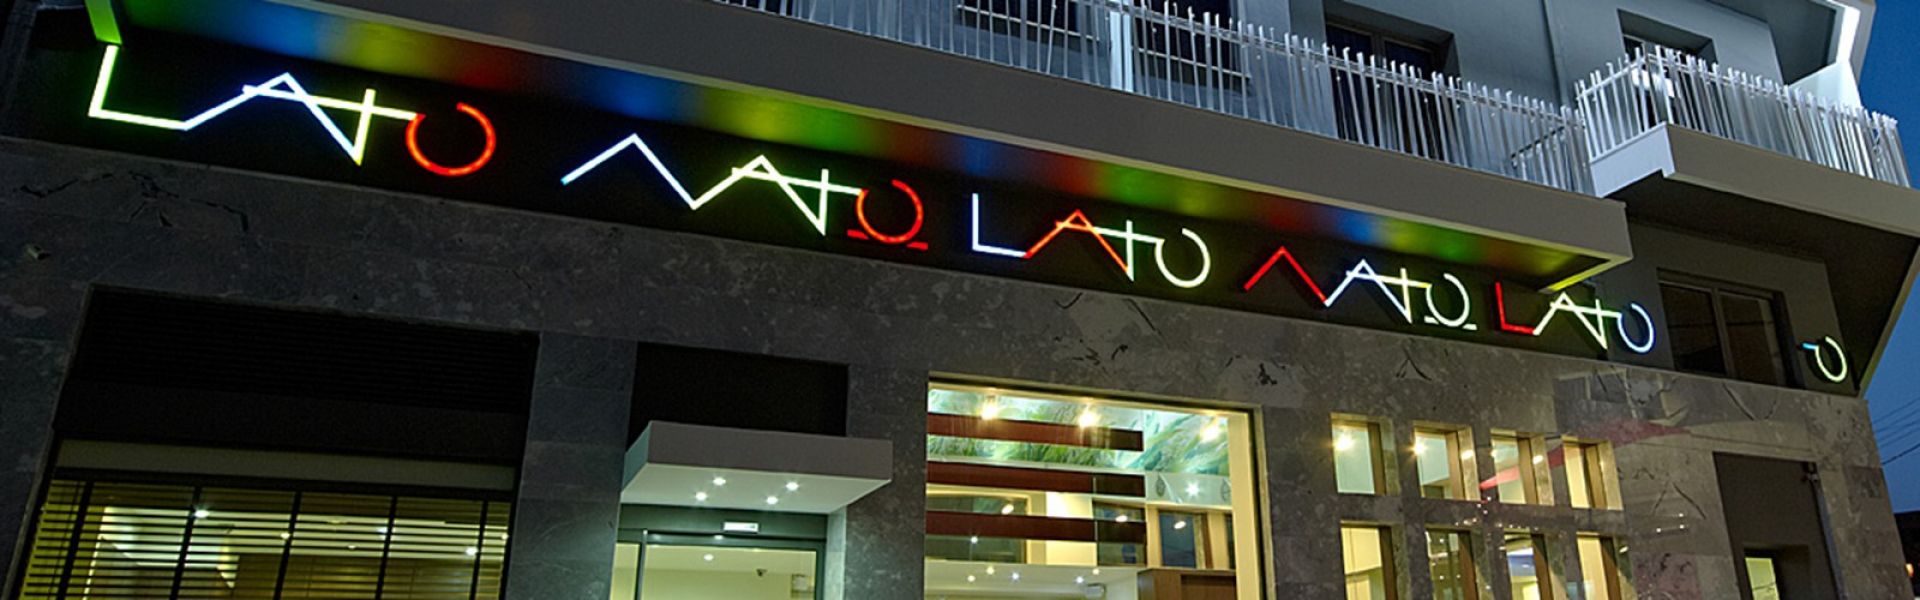 Lato Boutique Hotel